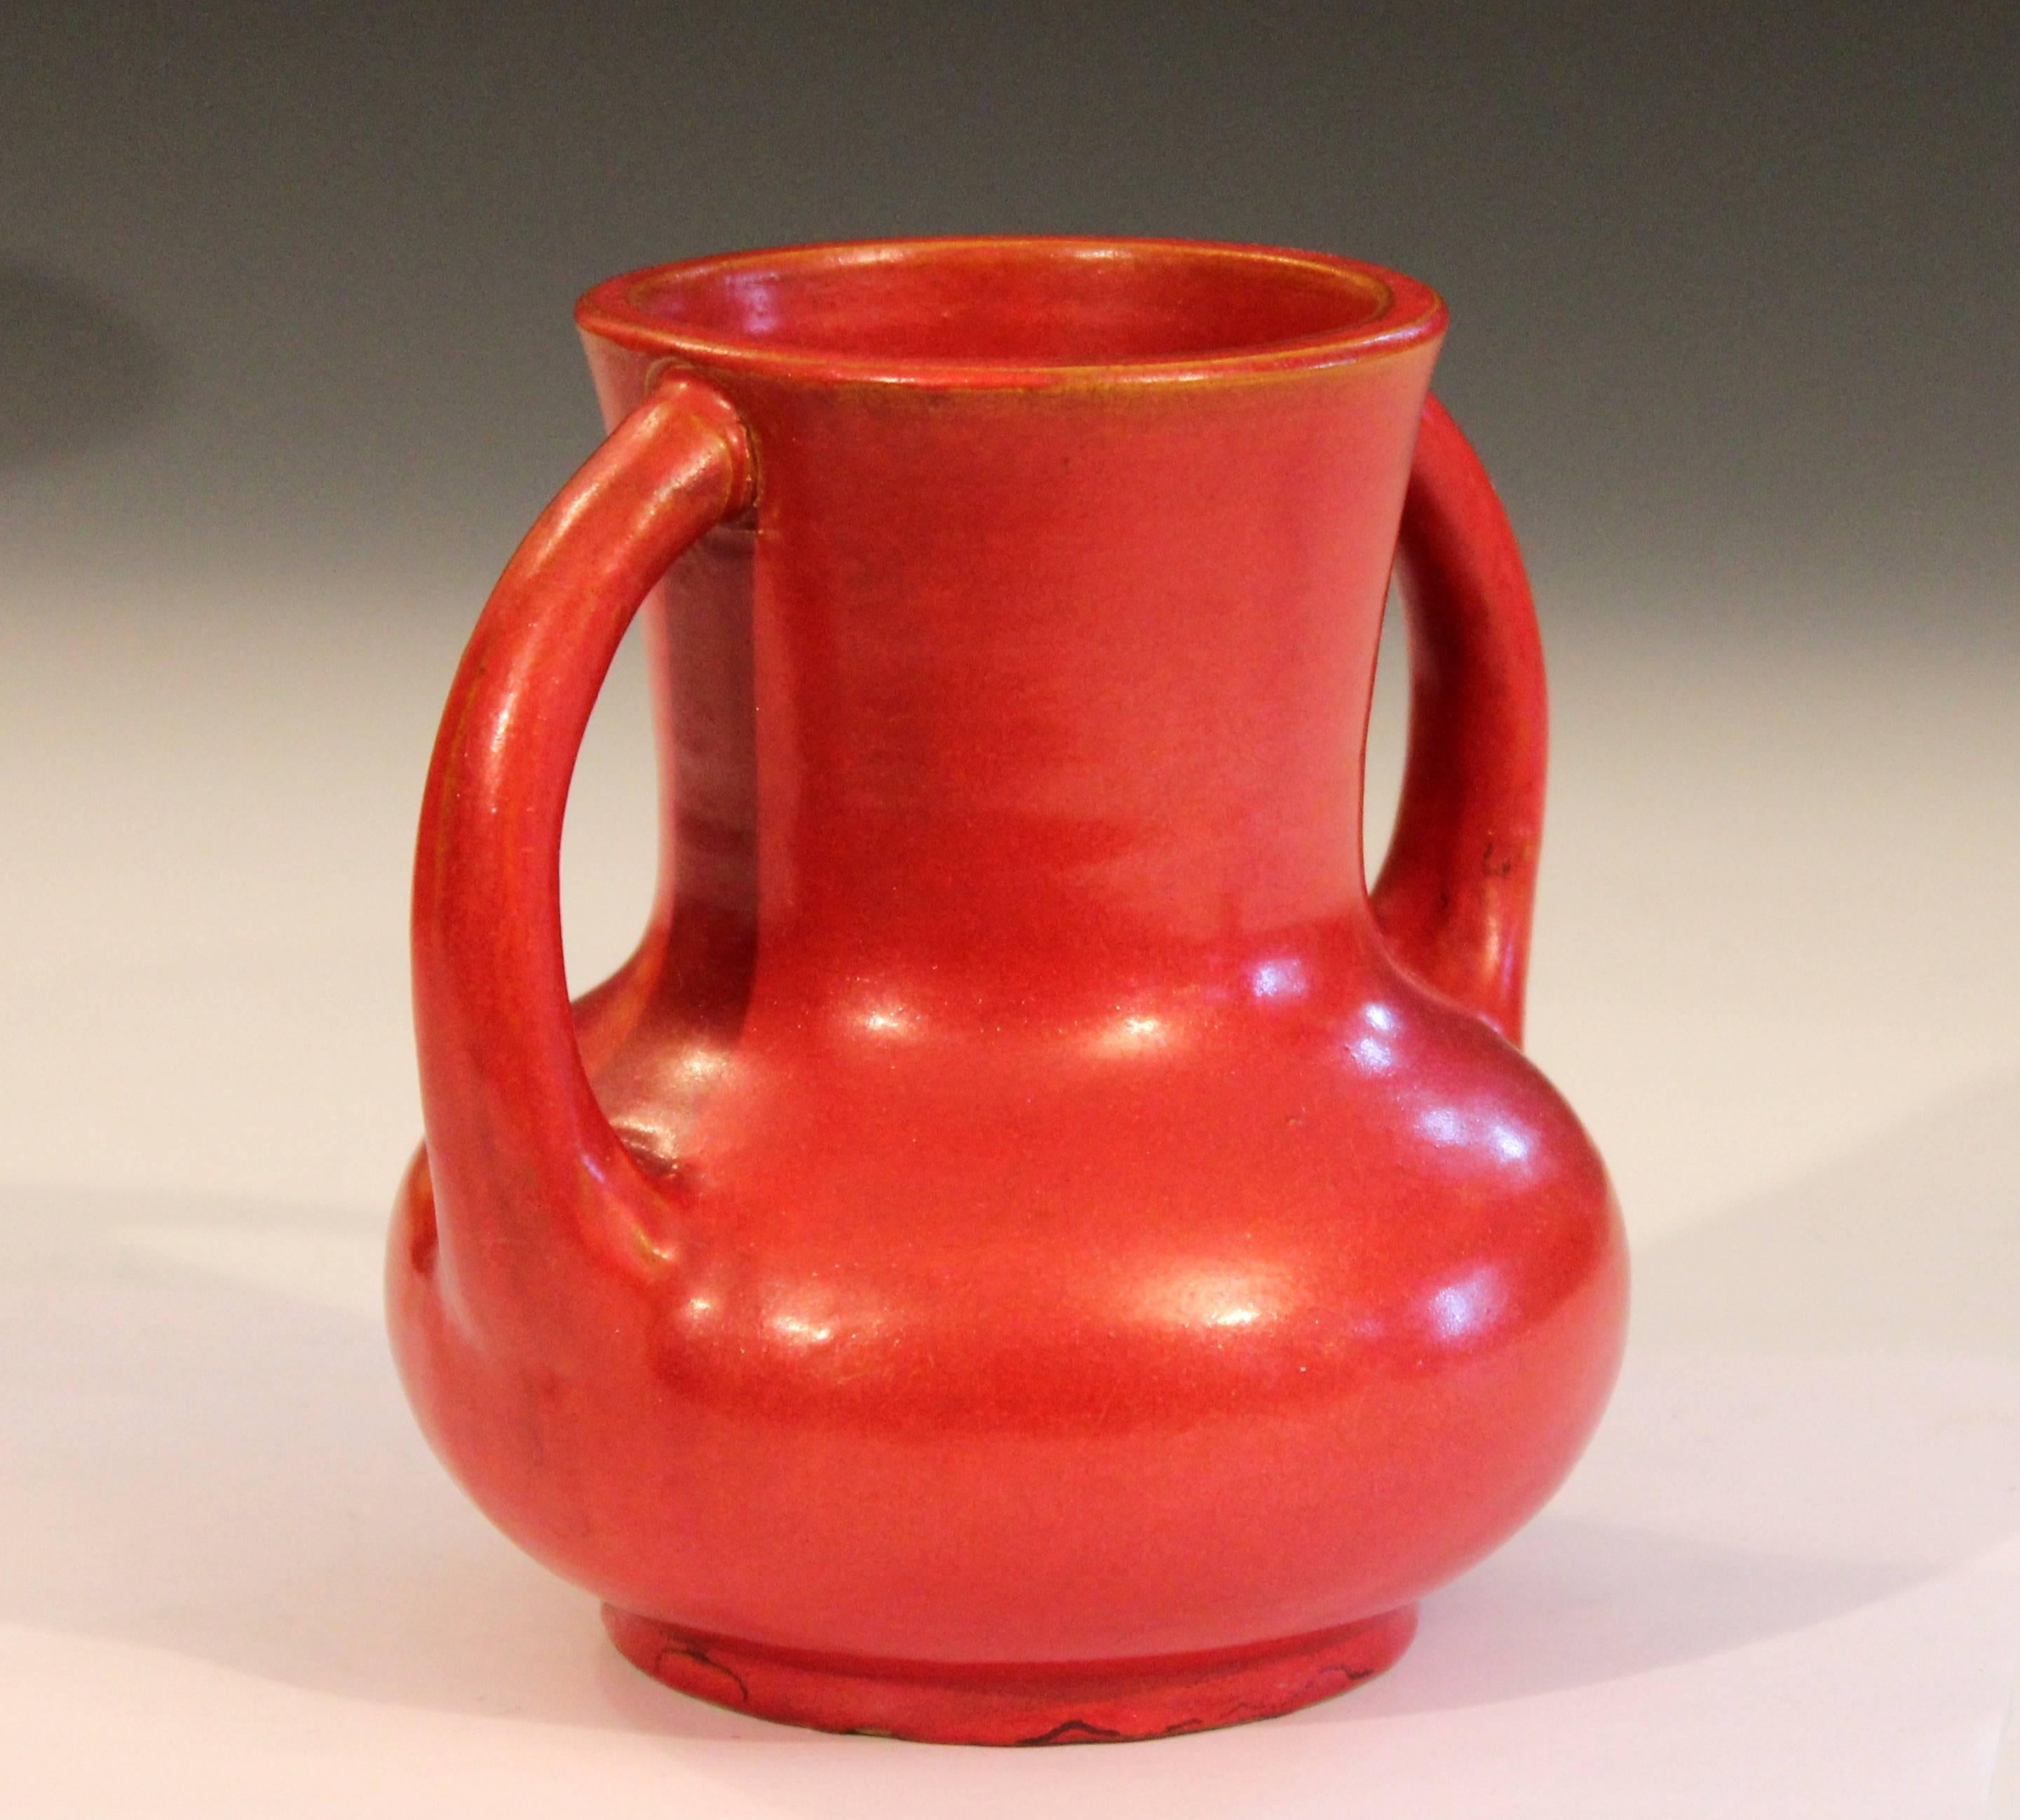 Turned Awaji Pottery Japanese Art Deco Vase Crystalline Chrome Orange Red Glaze